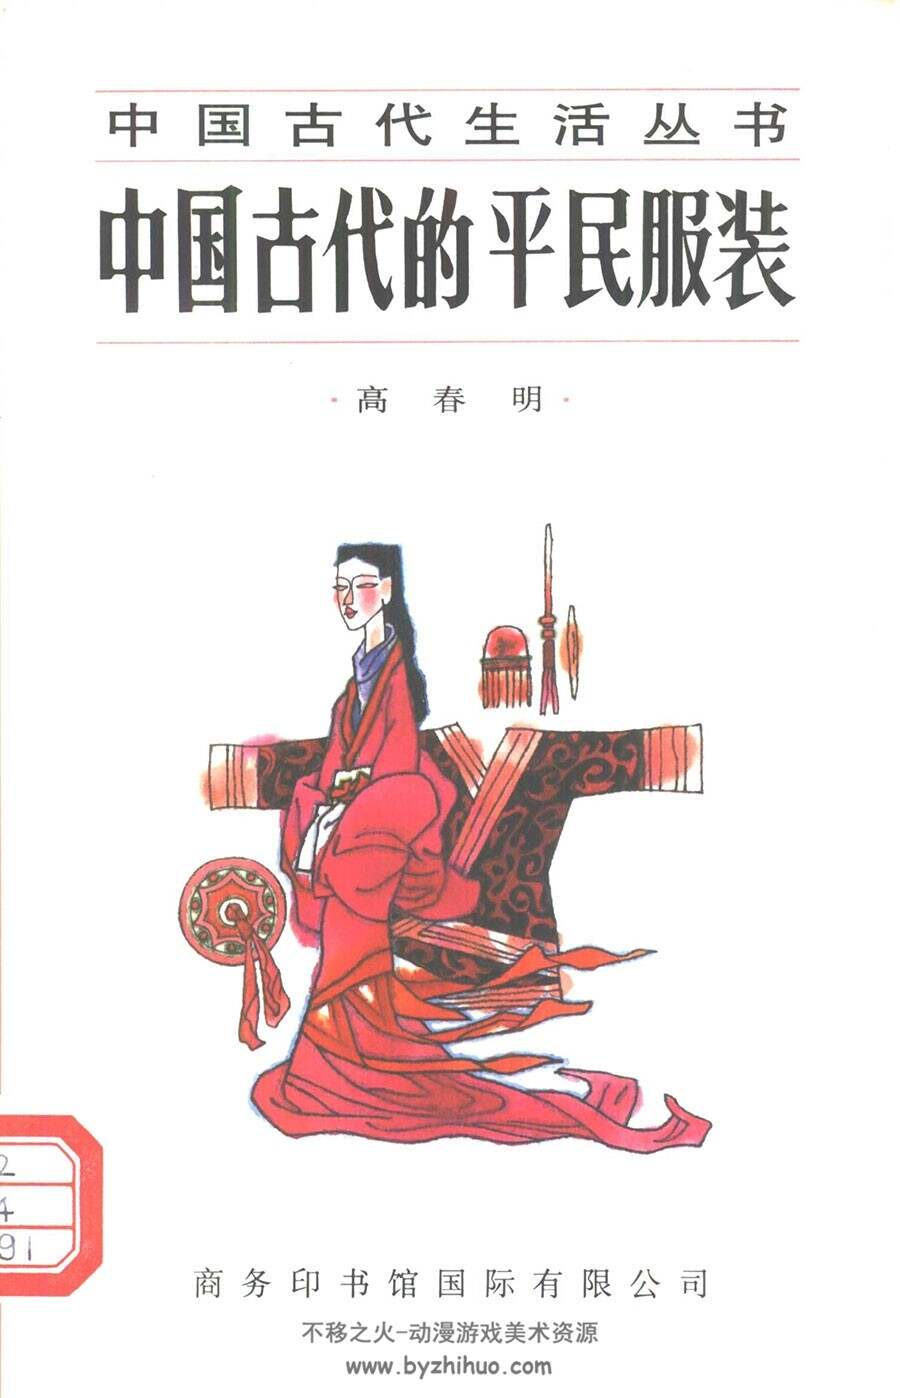 中国汉服文化 古代礼节节日等素材资源分享 369P